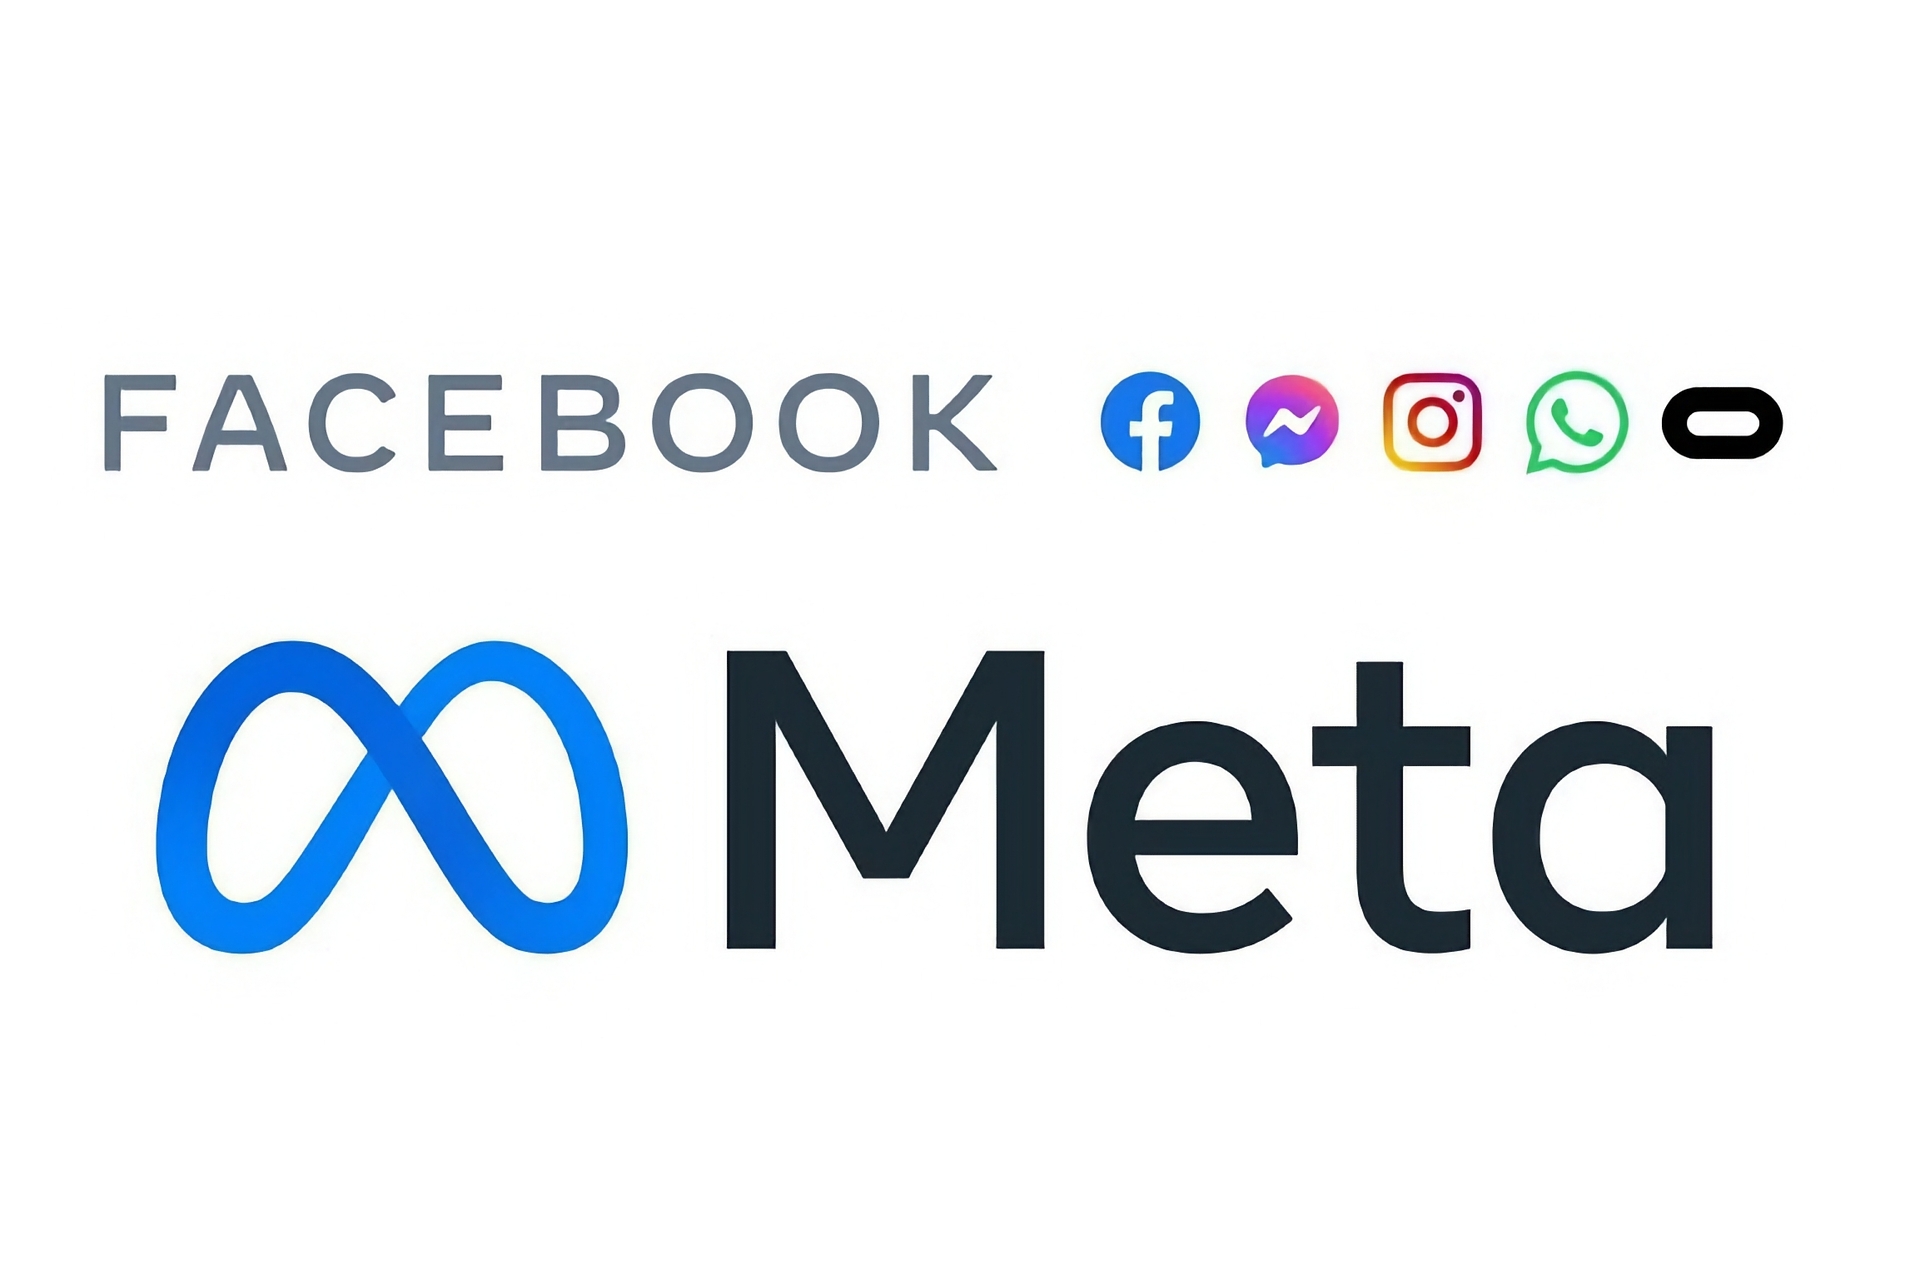 Facebook: Meta компаниясынын расмий логотиби, Facebook жана башка ири социалдык медиа же Messenger, Instagram, WhatsApp жана Oculus сыяктуу глобалдык санарип кызматтарына ээлик кылган компания